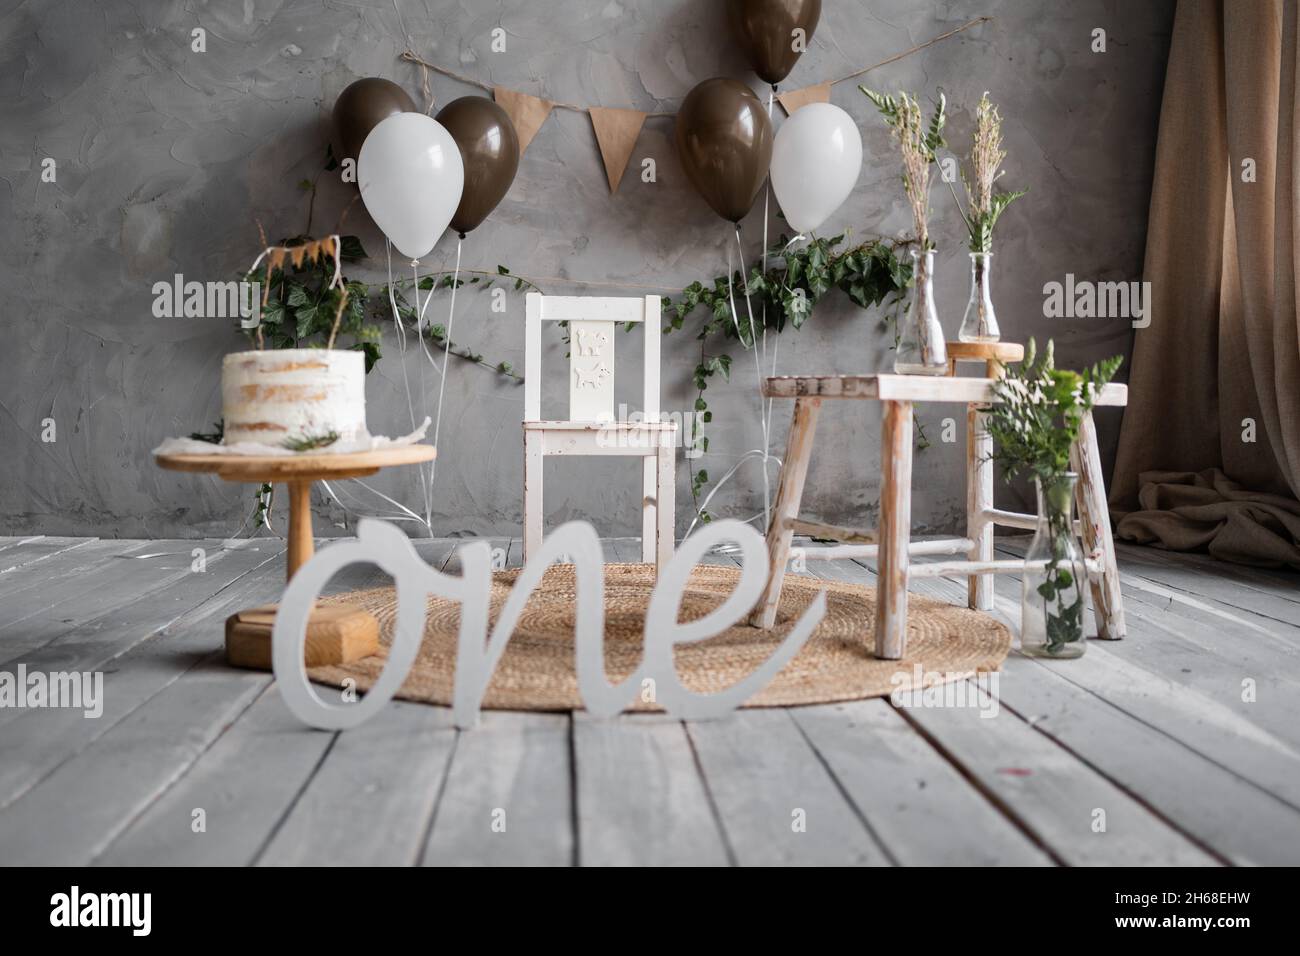 Fotozone zum ersten Geburtstag, Kuchen und Luftballons im rustikalen Stil, Holzboden, grauer Wandhintergrund. Stockfoto